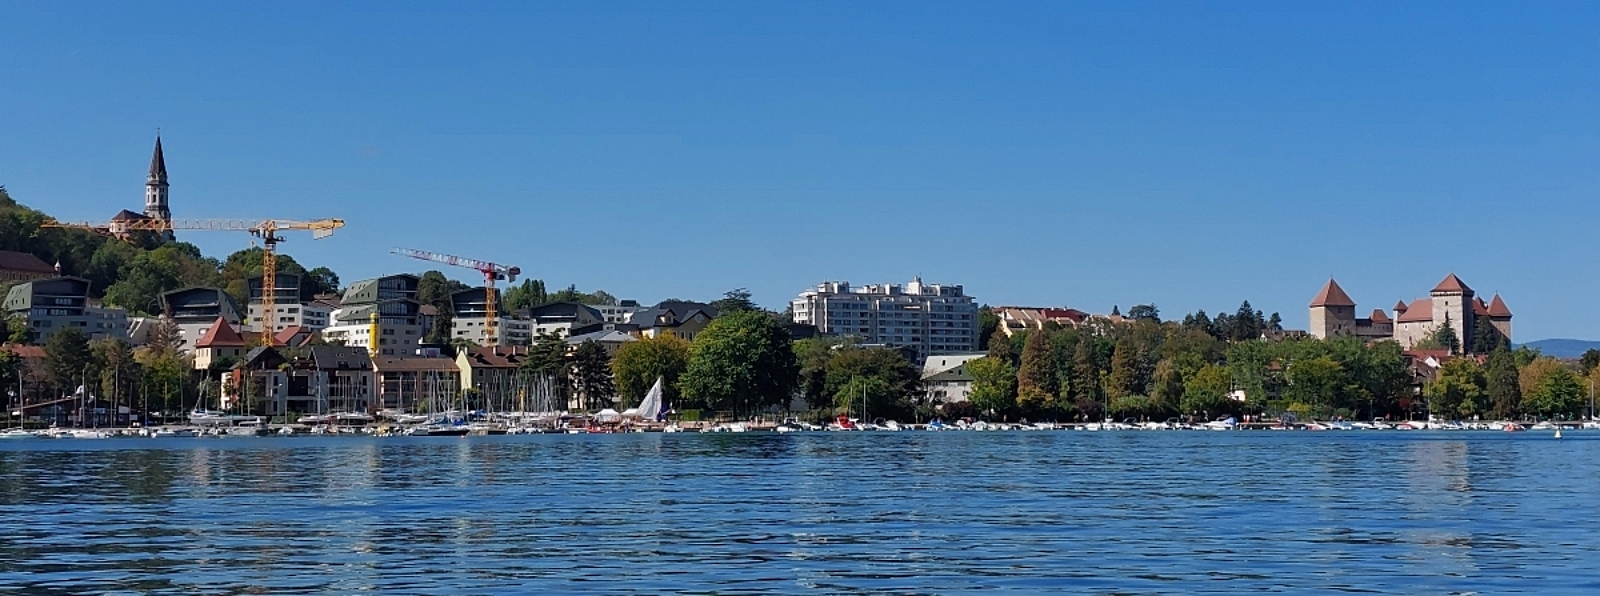 Panorama Blick auf die Stadt Annecy  und das Hafenbecken,
aufgenommen mit dem Smartphone. 09.2022 (Jeanny)

